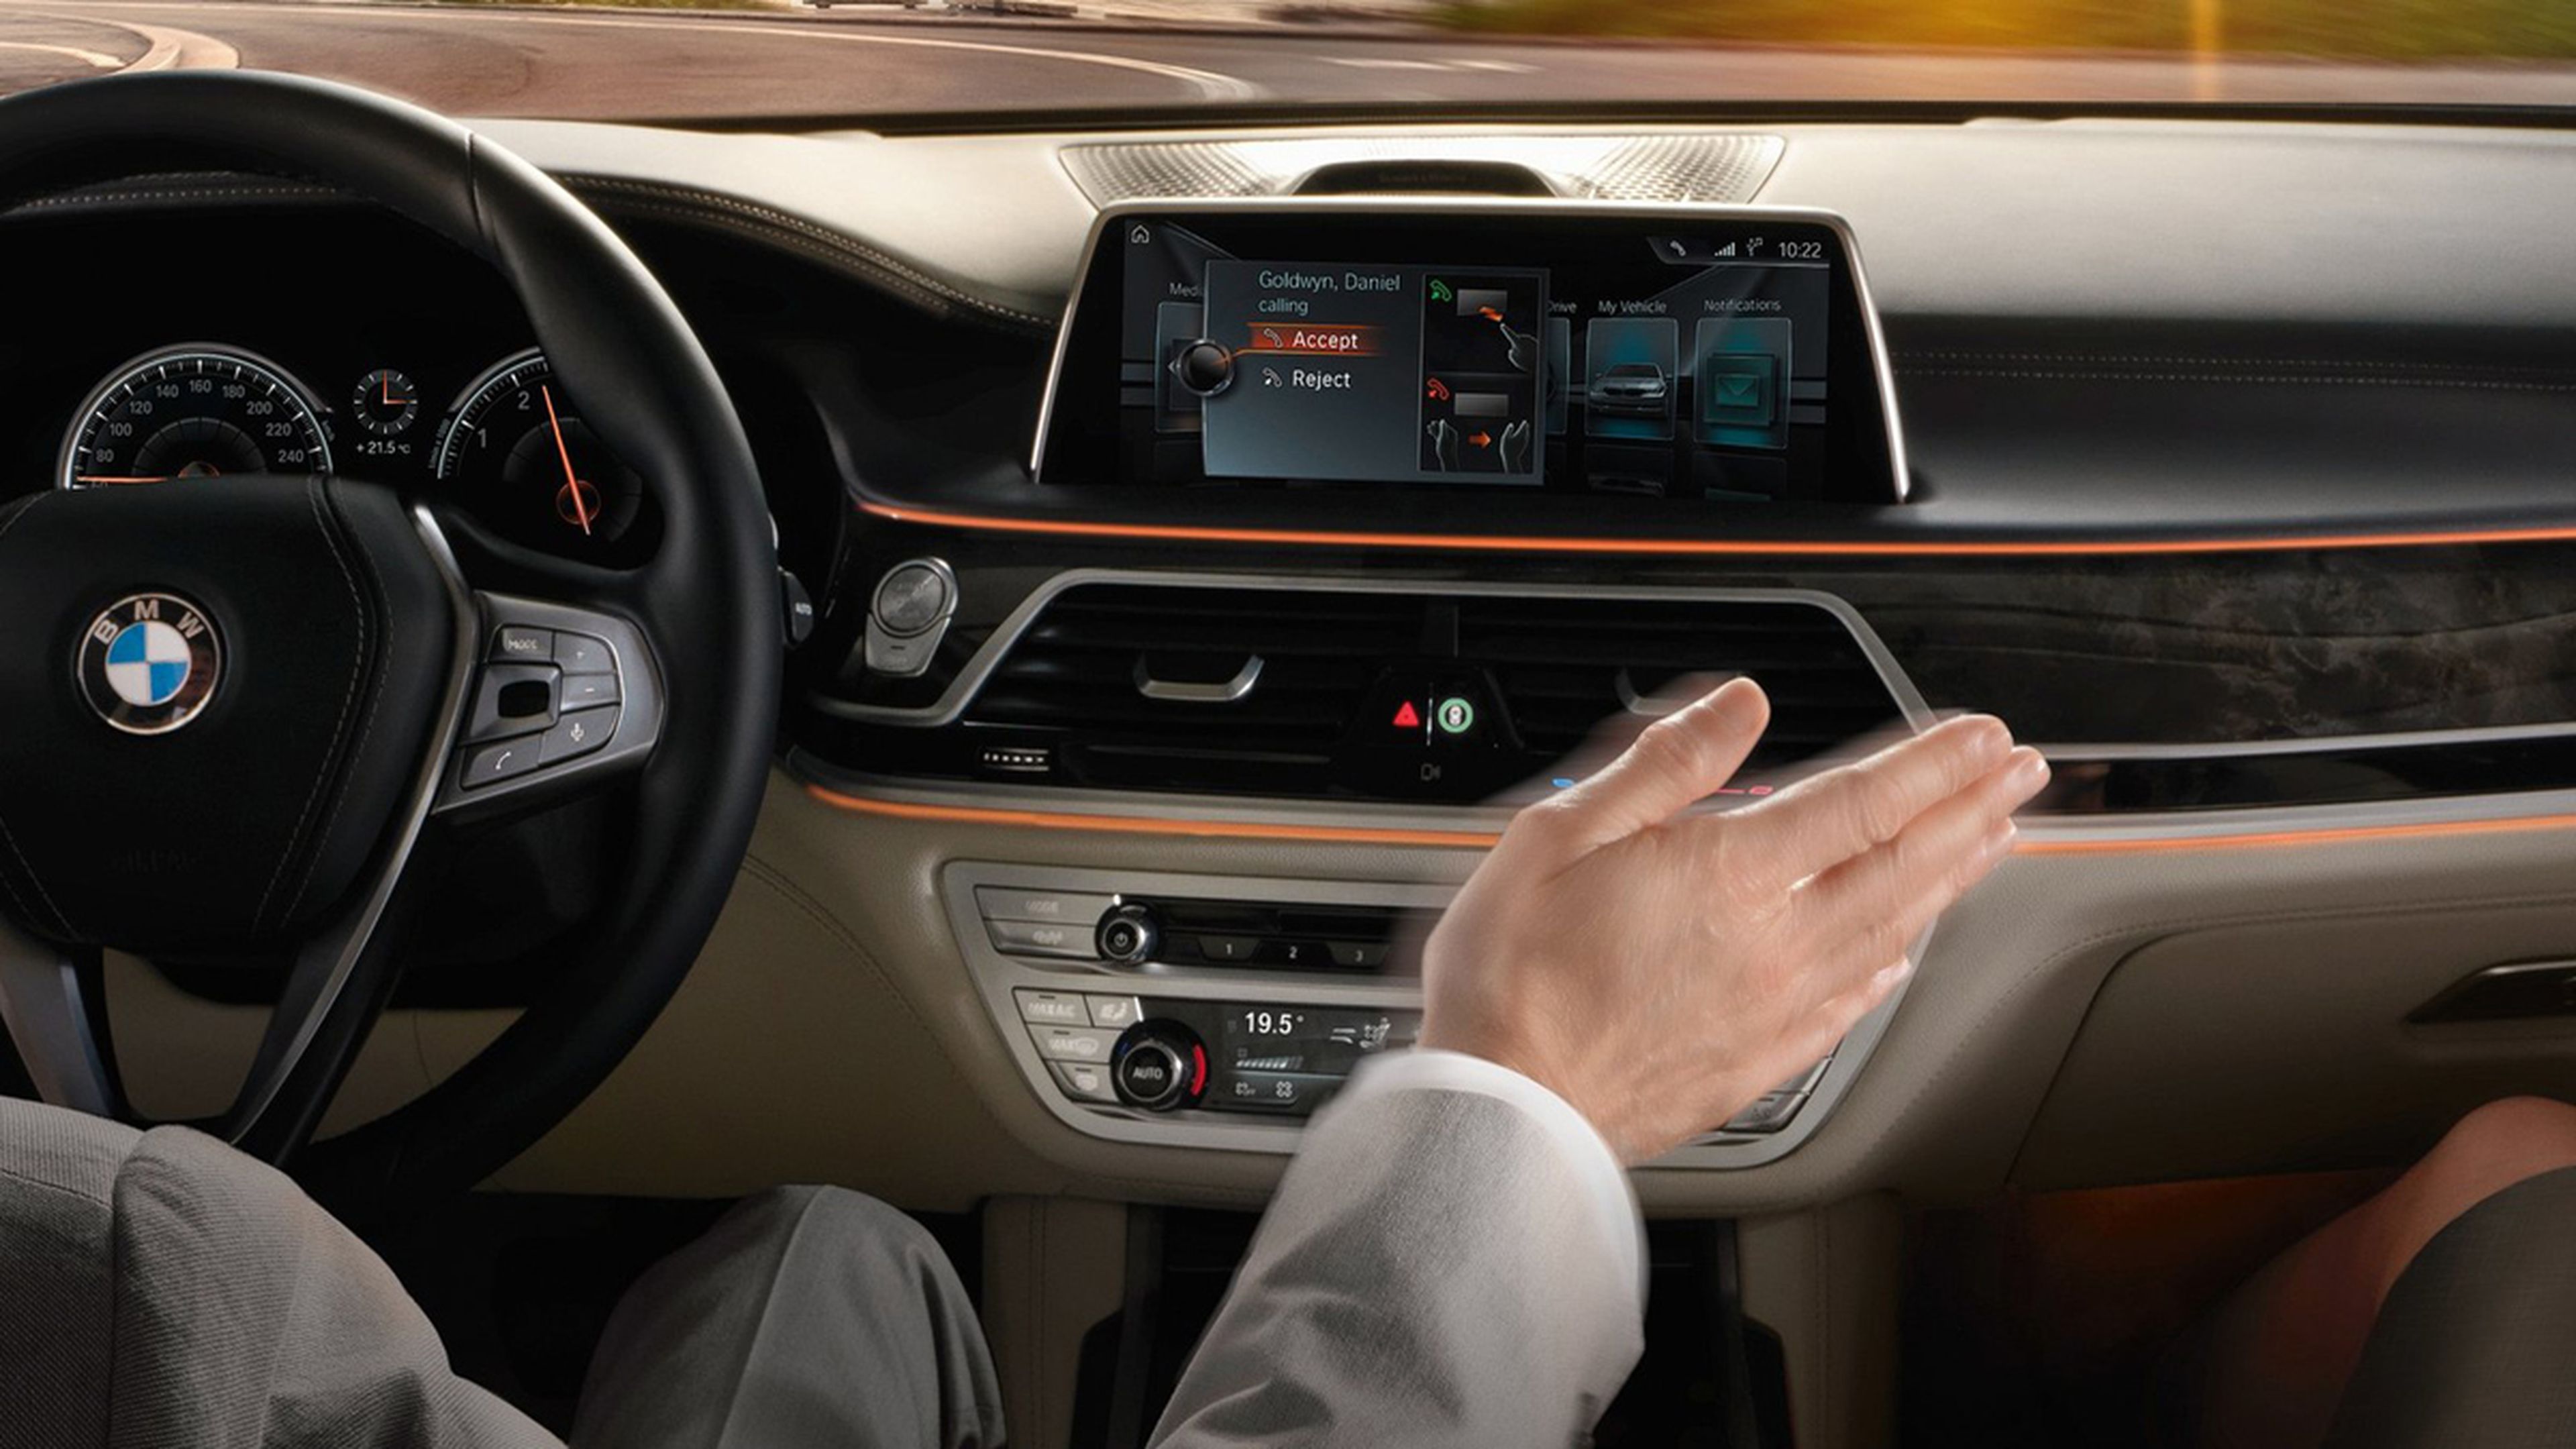 soluciones-tecnológicas-coches-2016-control-gestual